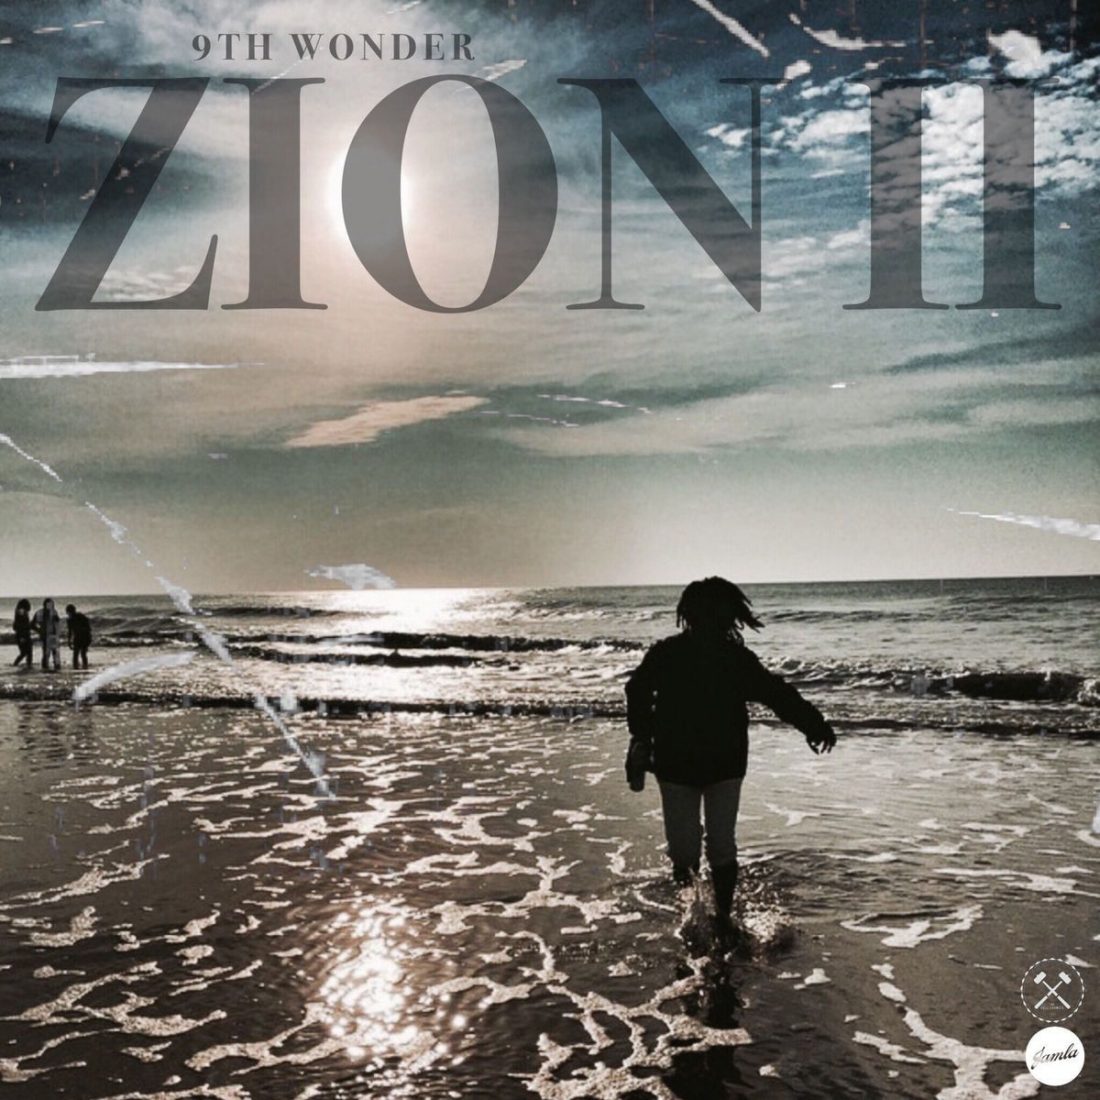 9th-wonder-zion-2_vinyl